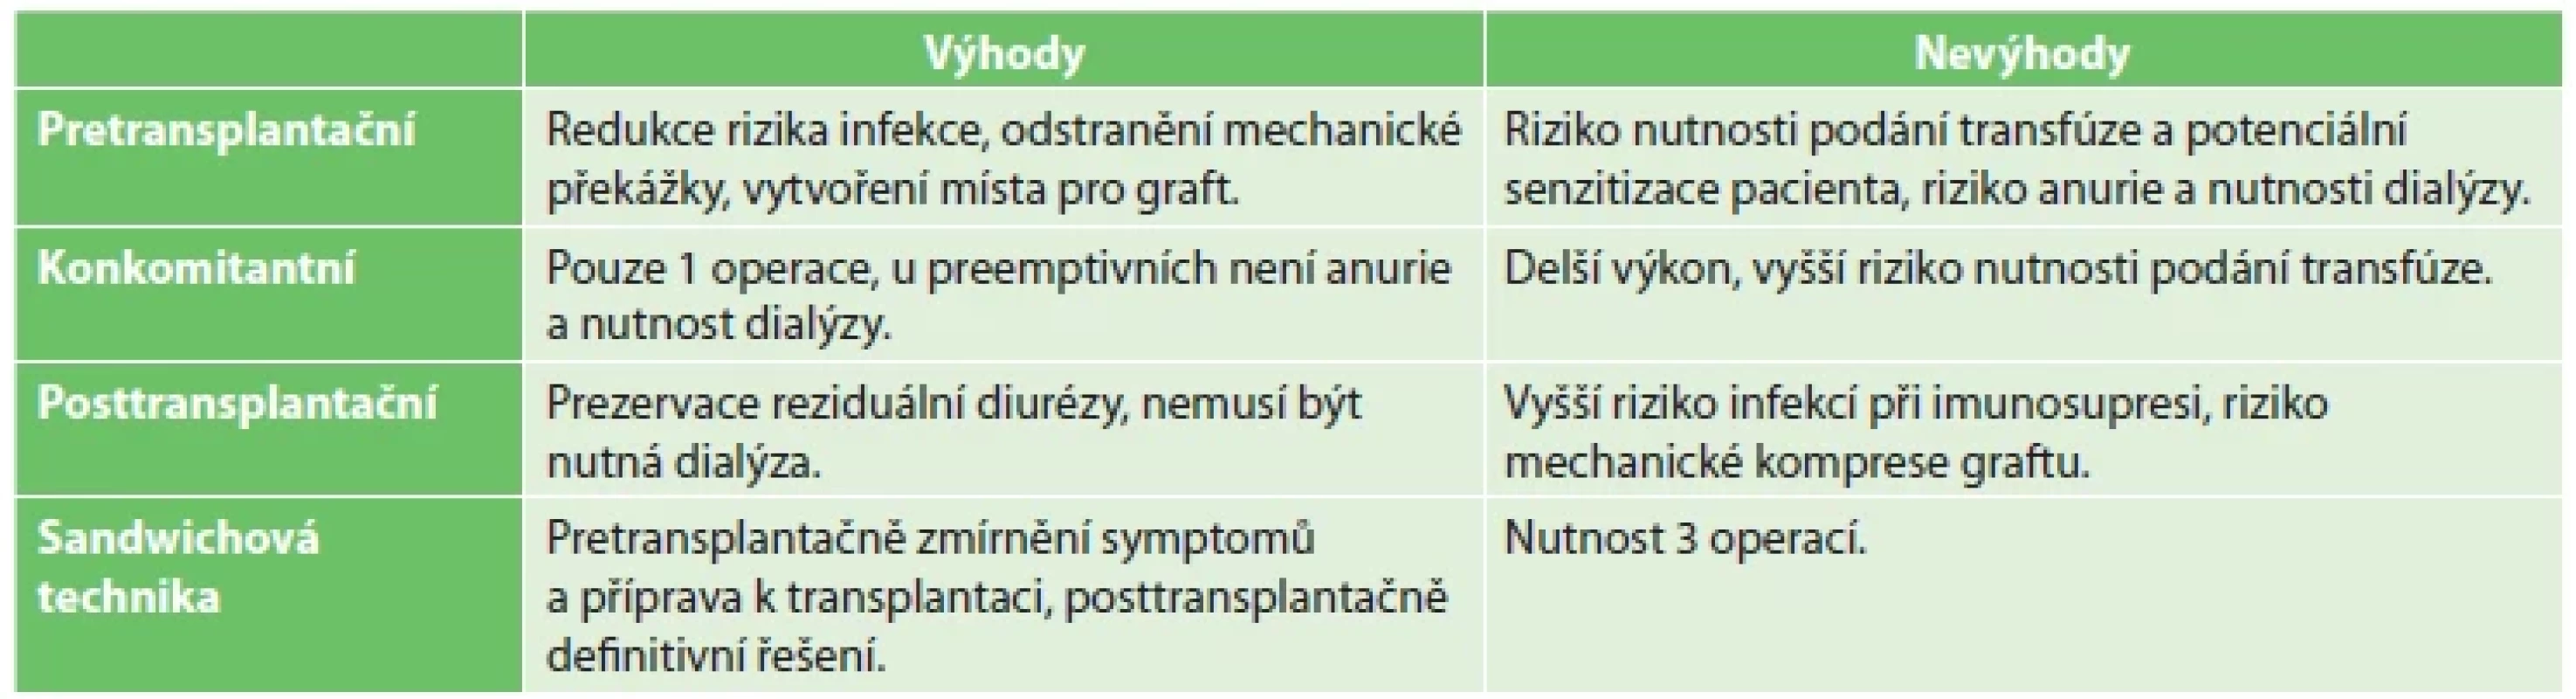 Srovnání různých metod načasování NN <br> 
Tab. 4: Comparison of different timing methods of native nephrectomy